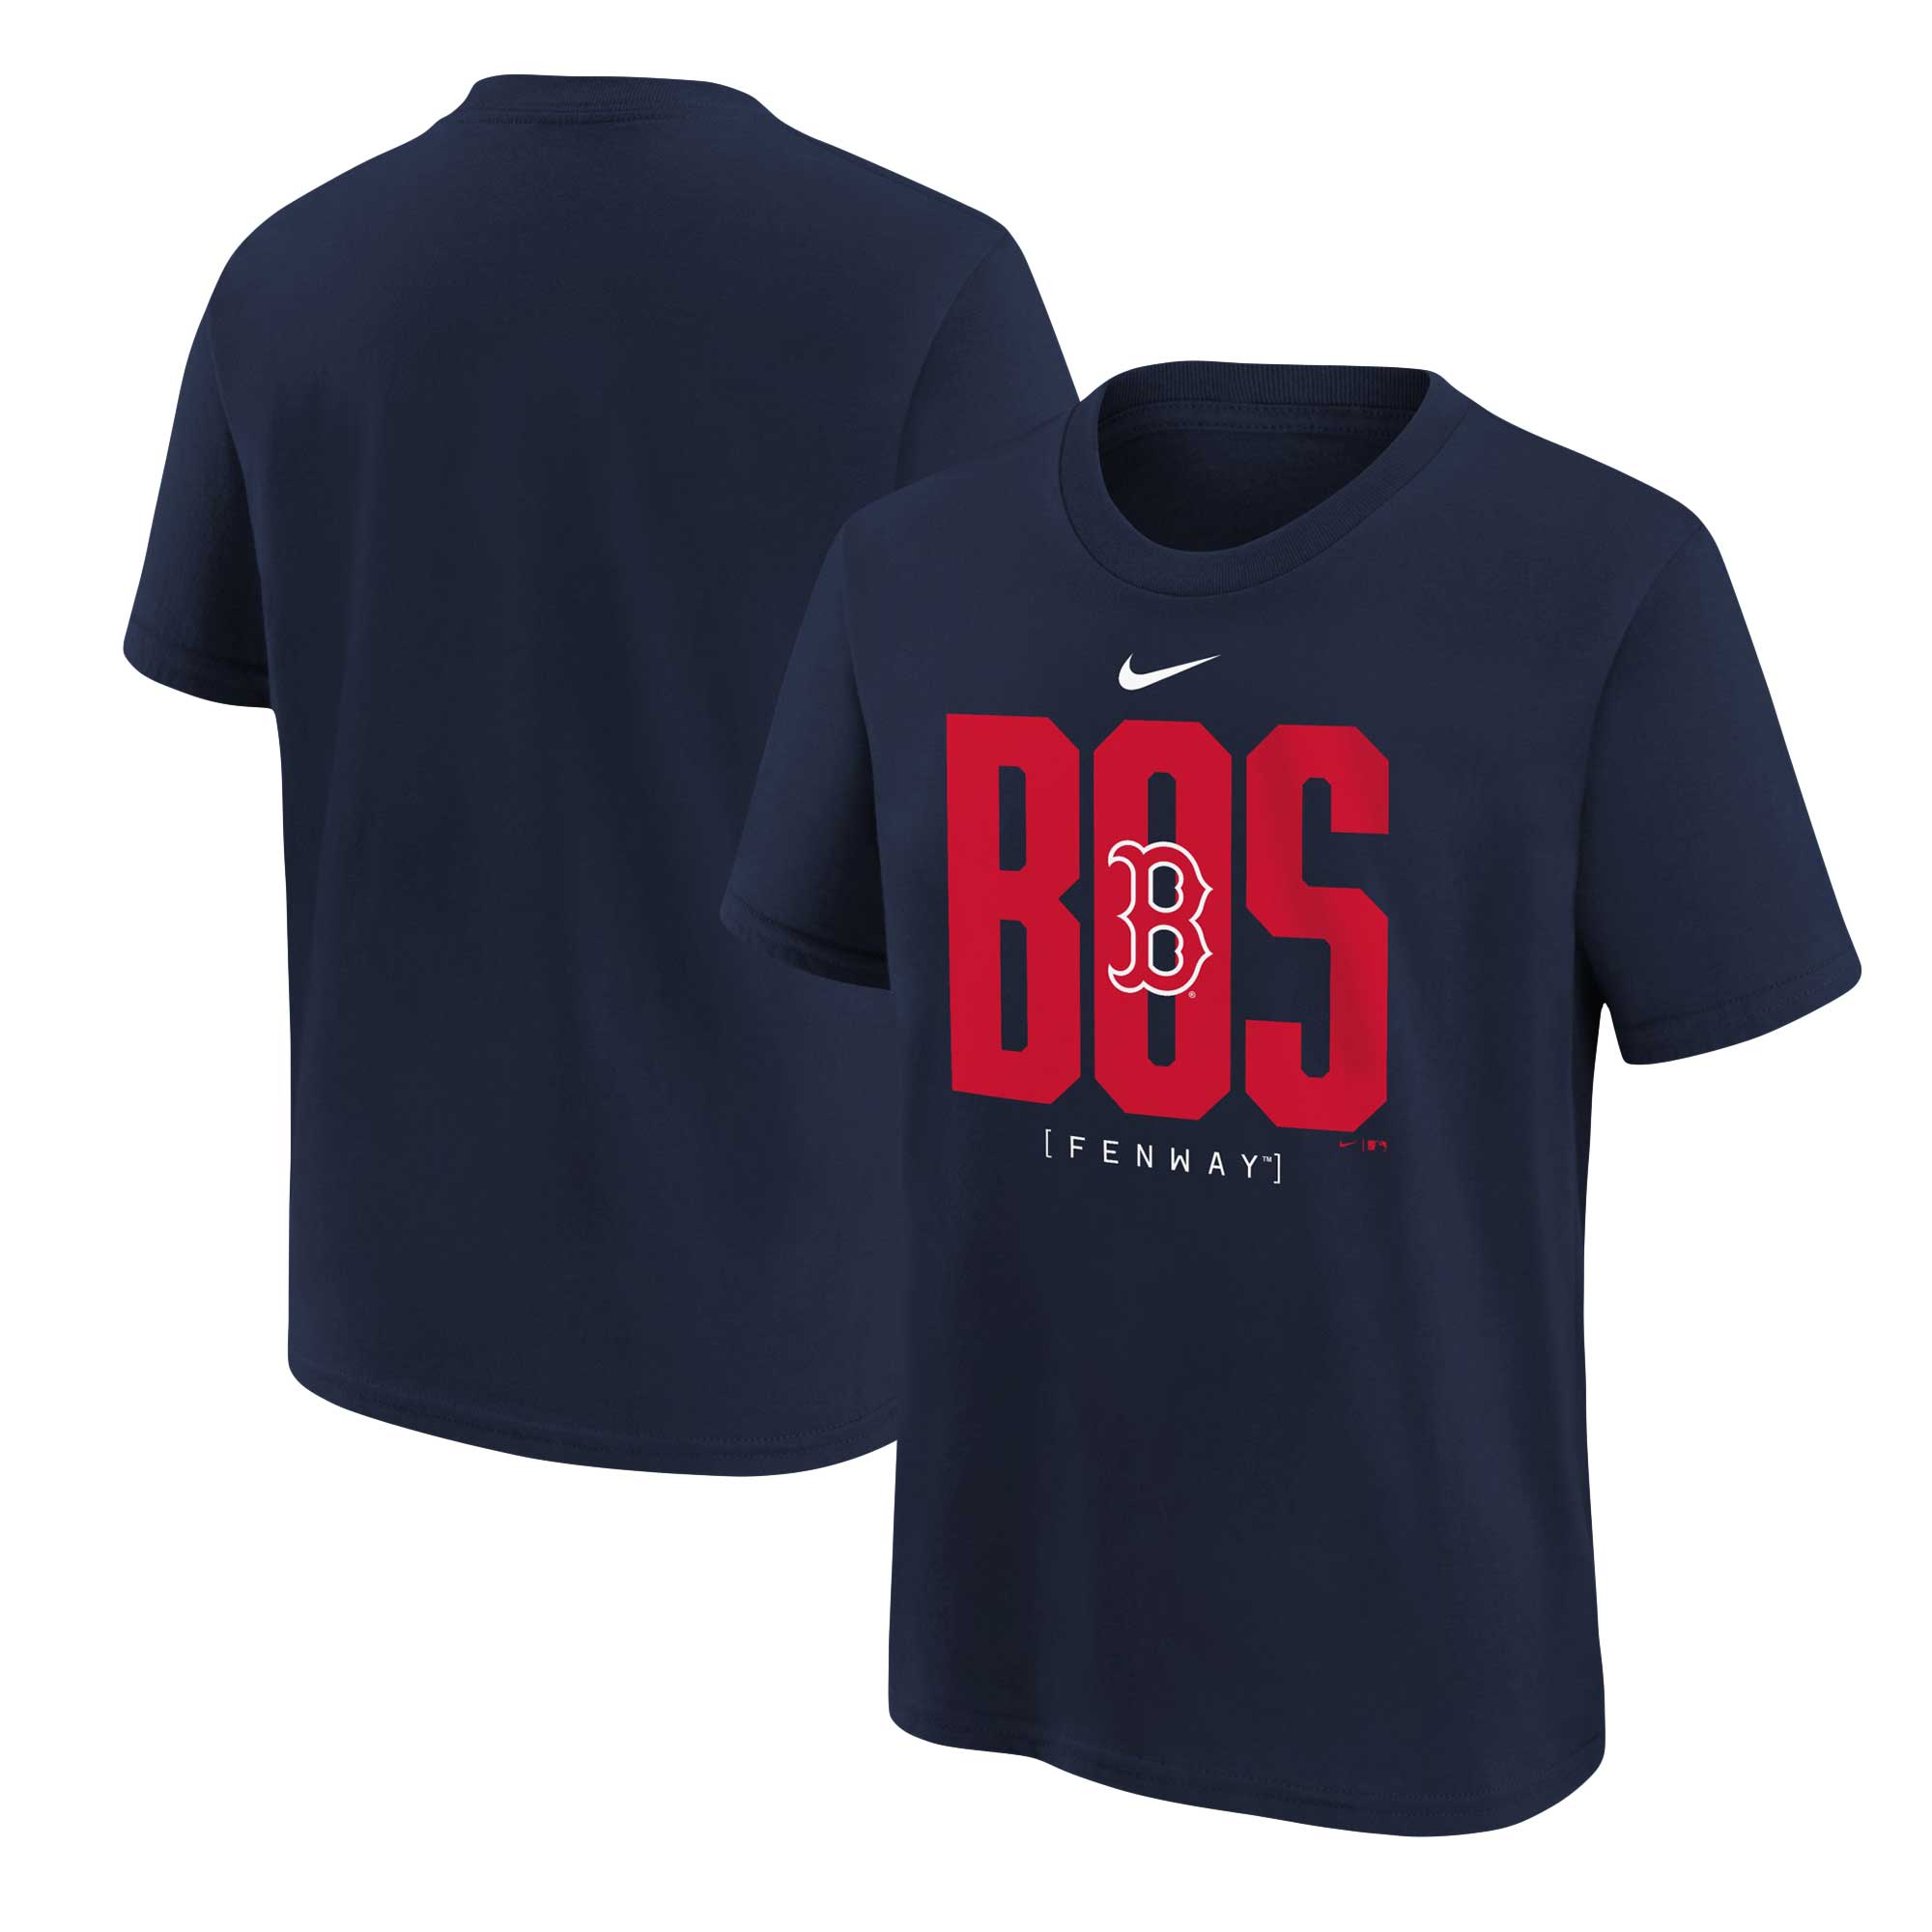 Nike Red Sox Scoreboard T-Shirt